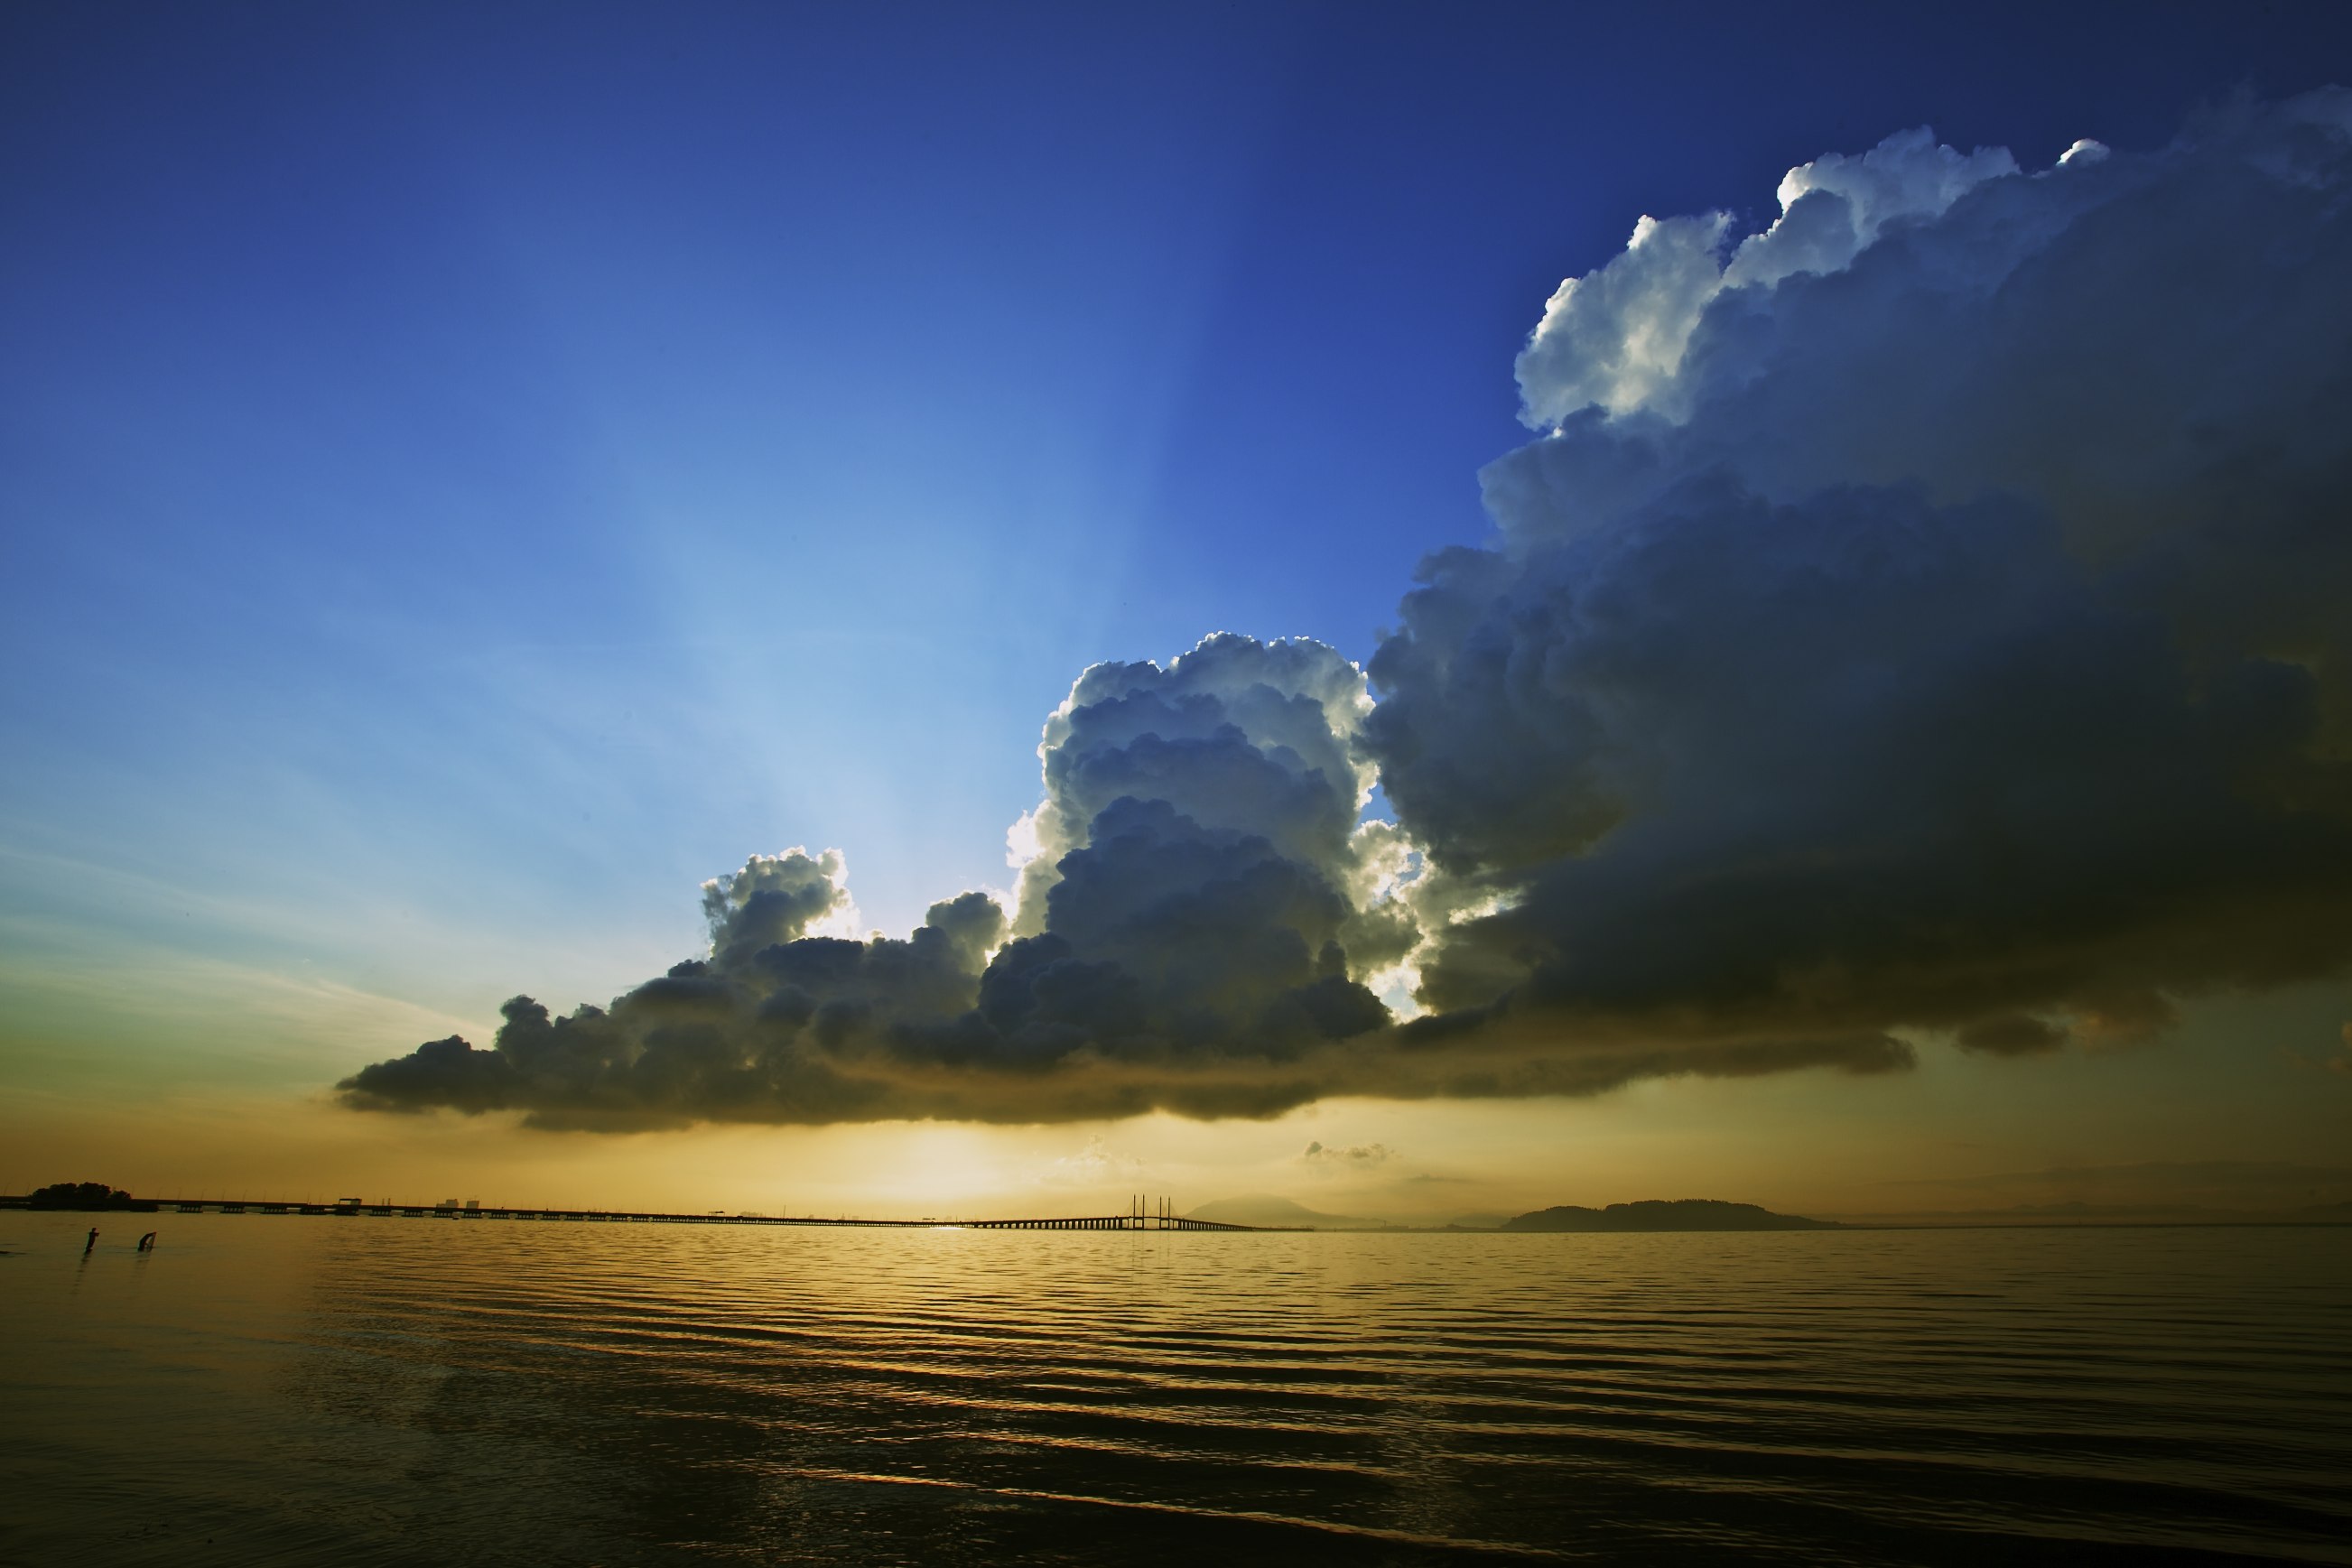 フリー写真素材 自然 風景 空 雲 朝日 朝焼け 日の出 海 マレーシア 画像素材なら 無料 フリー写真素材のフリーフォト